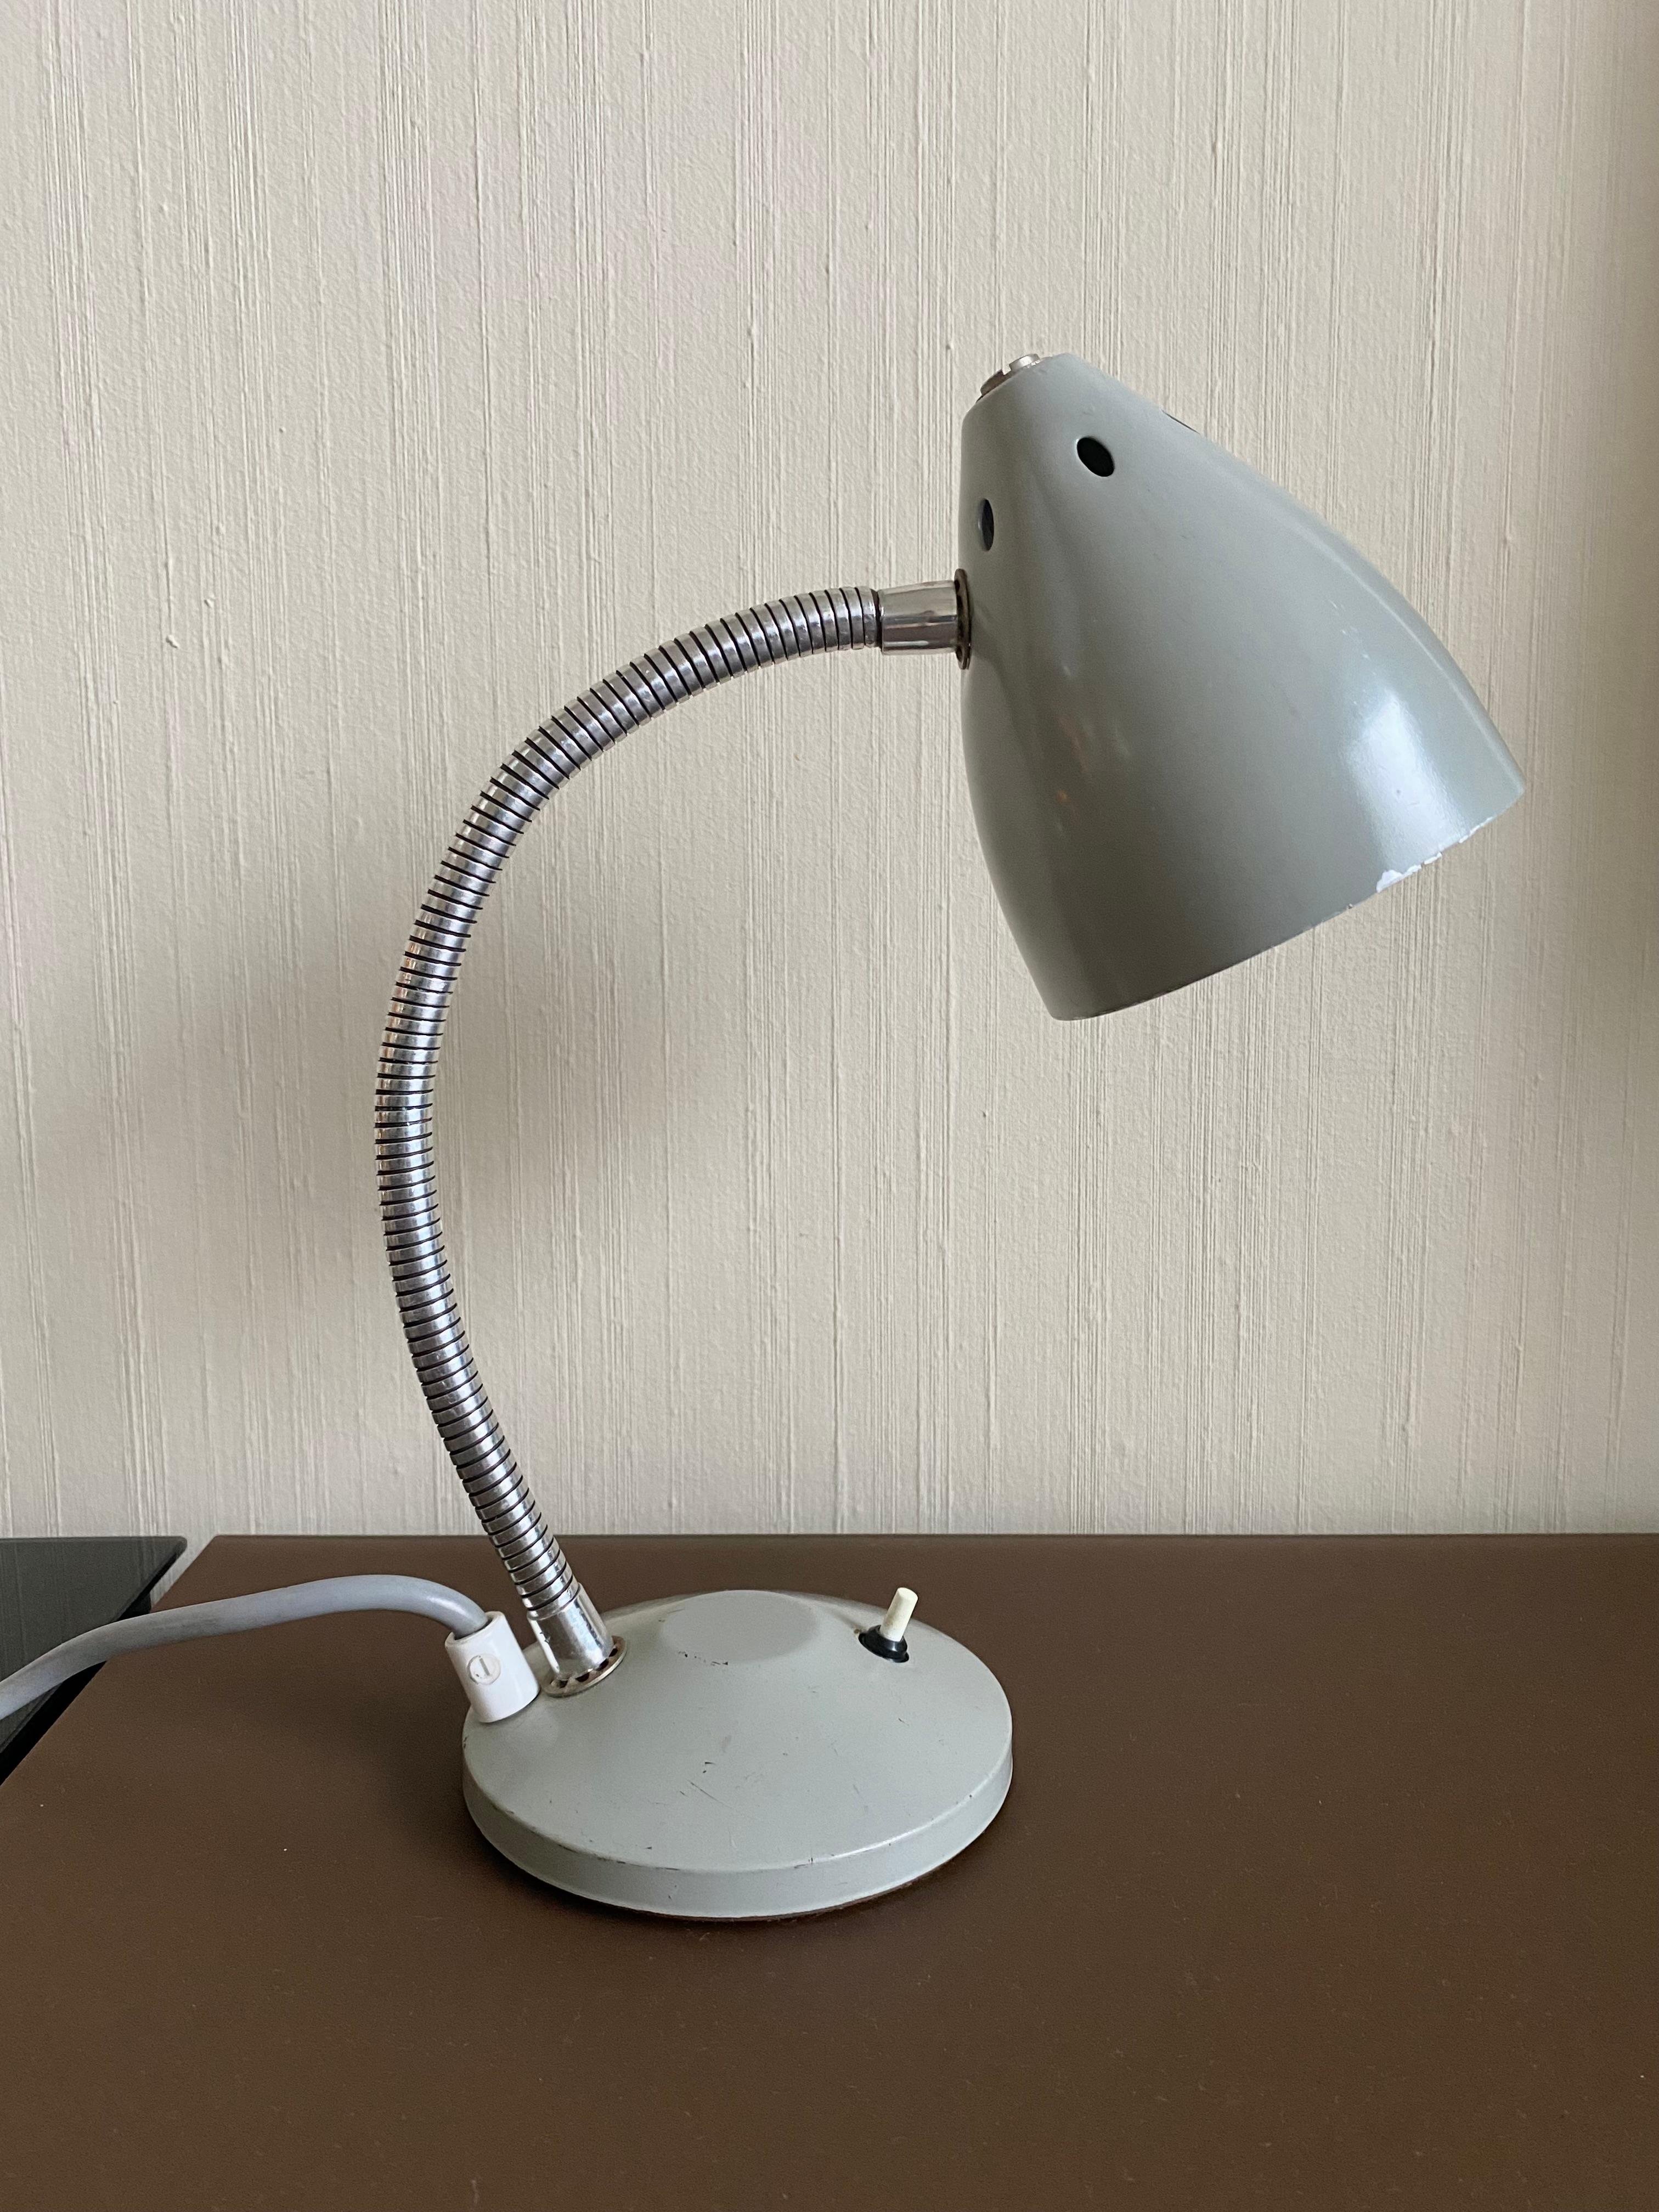 Petite lampe de bureau ou lampe de lecture, conçue par Herman Theodoor Busquet pour Hala Zeist vers les années 1960. Cette jolie petite lampe était appelée 